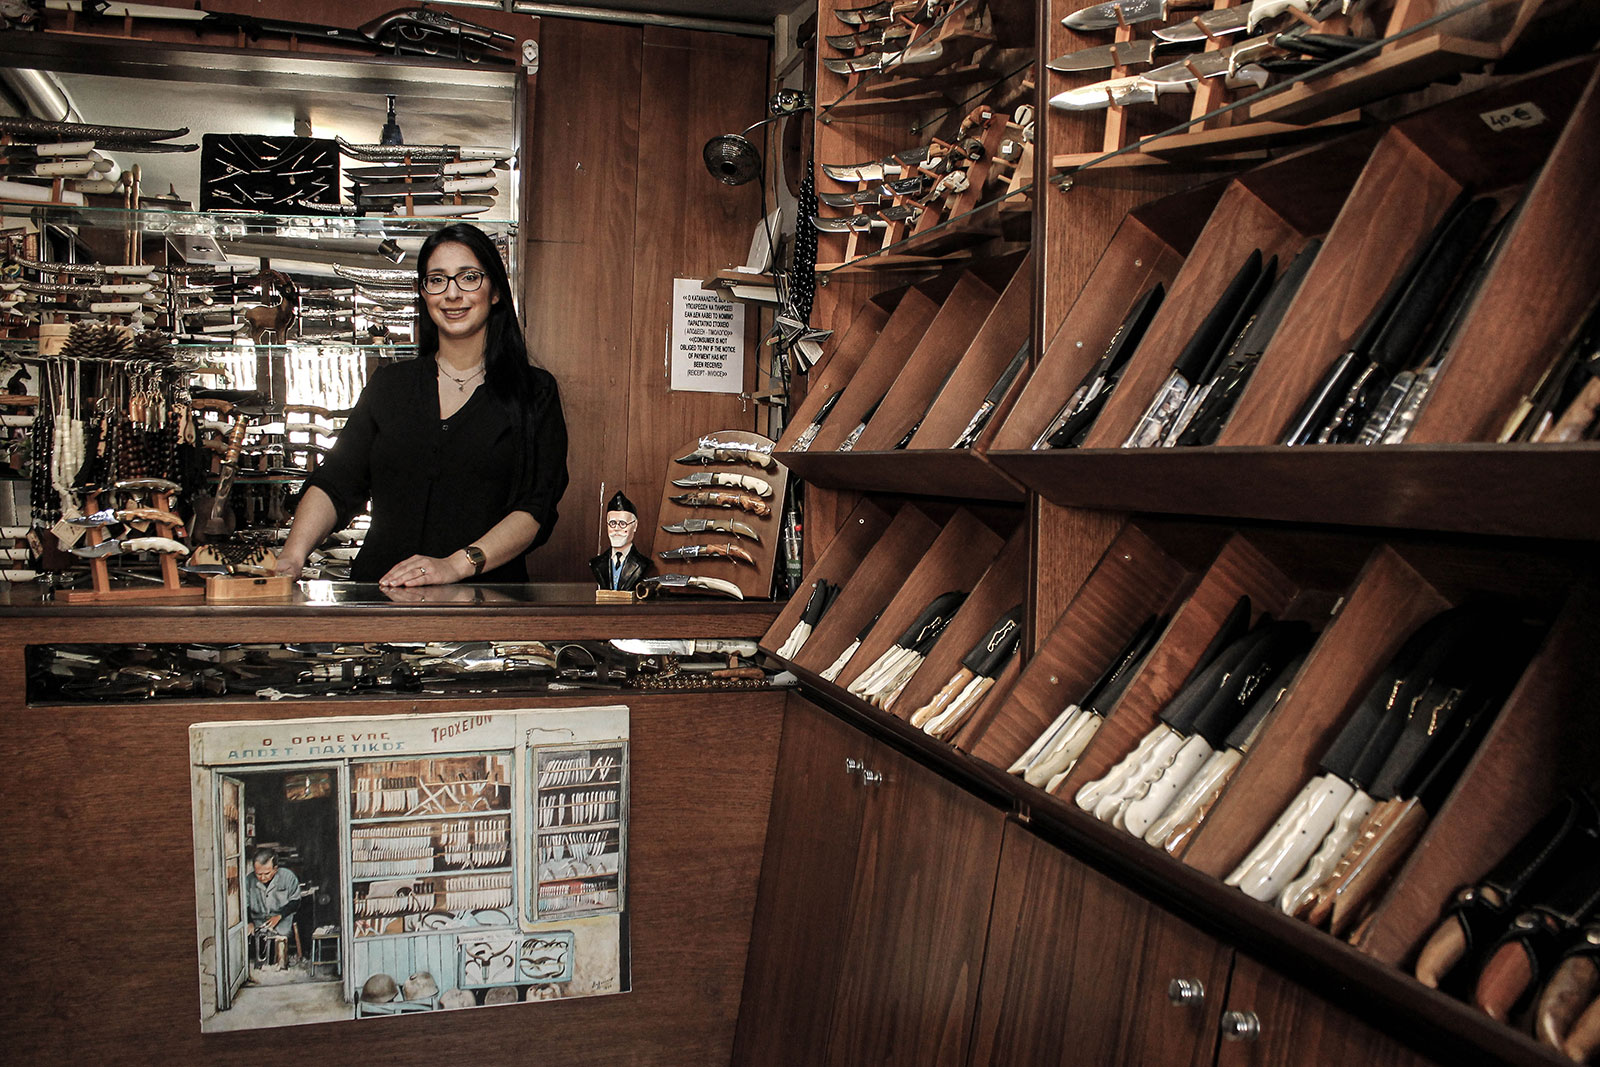 Ο Αρμένης – Παραδοσιακό Μαχαιροποιείο